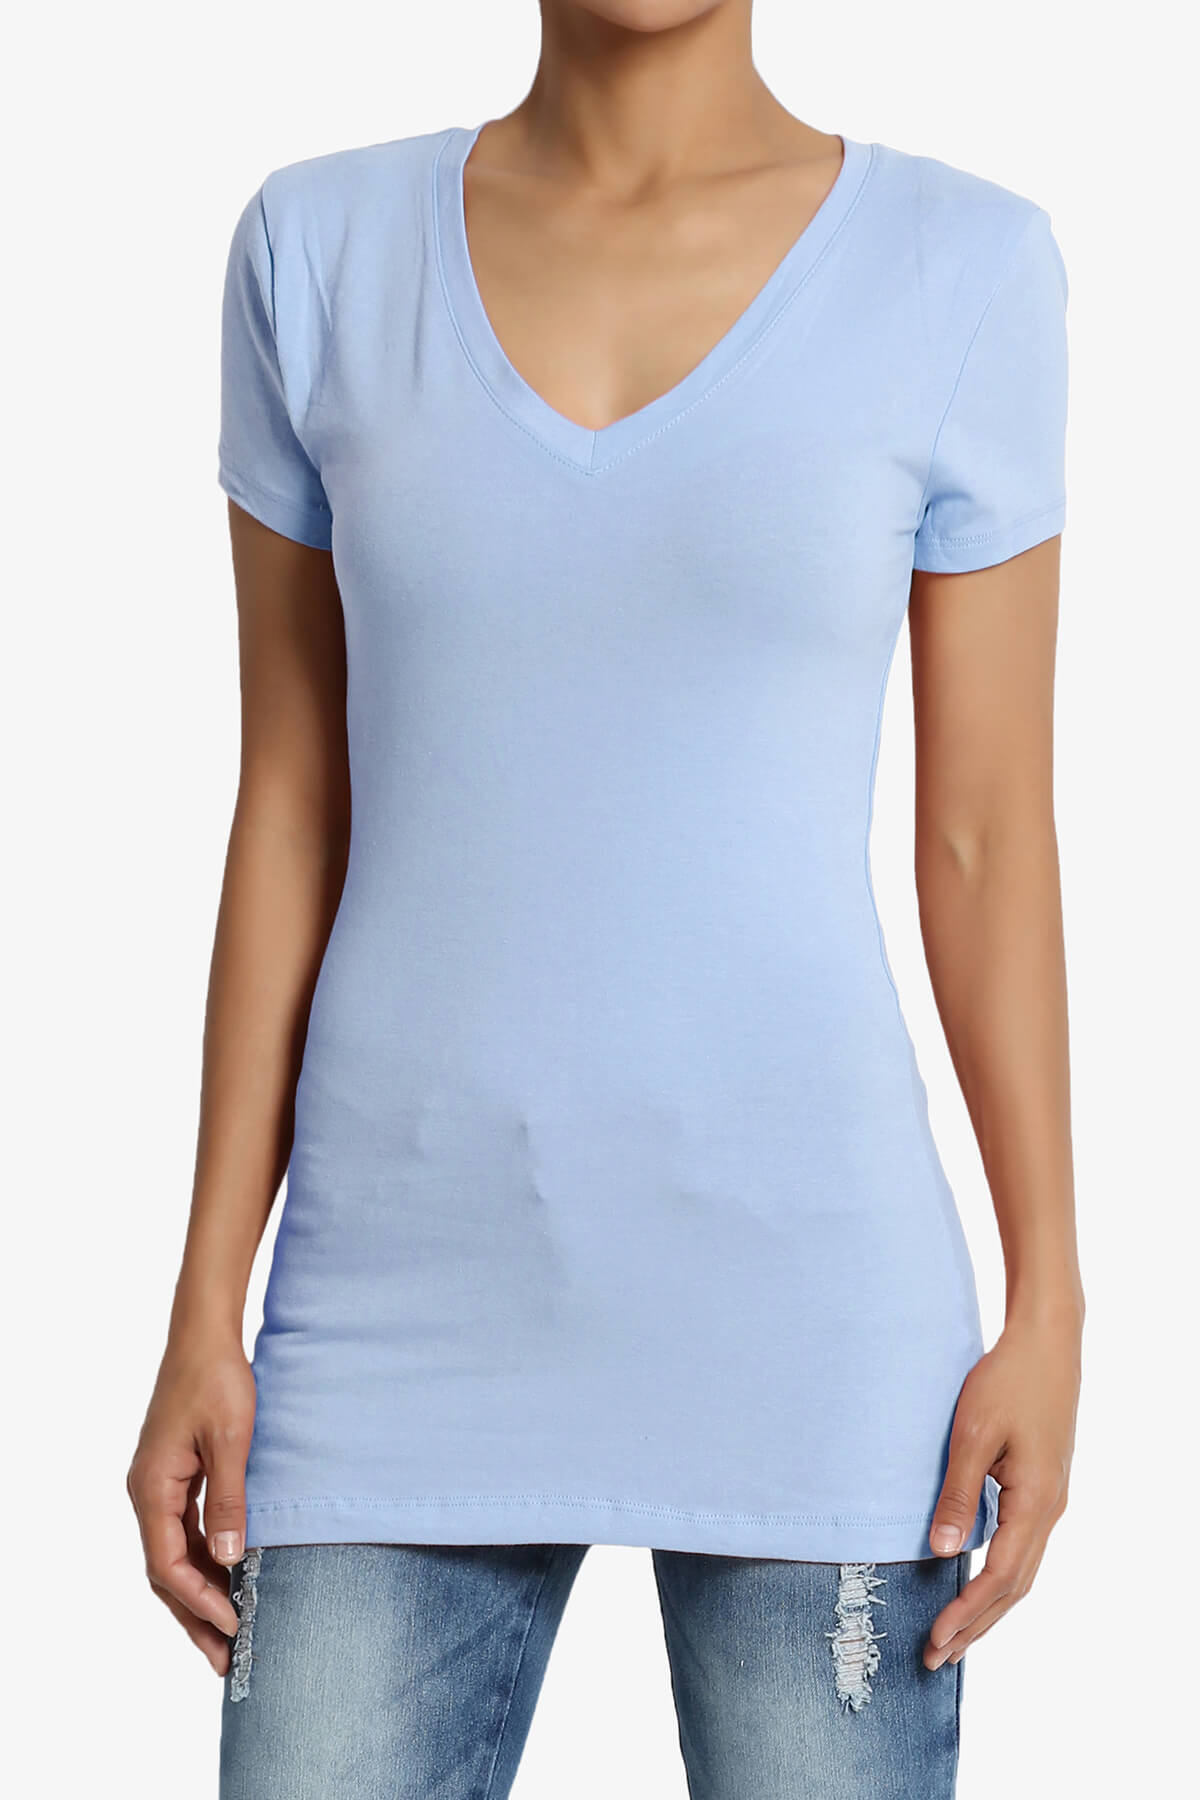 Candela V-Neck Short Sleeve T-Shirts LIGHT BLUE_1